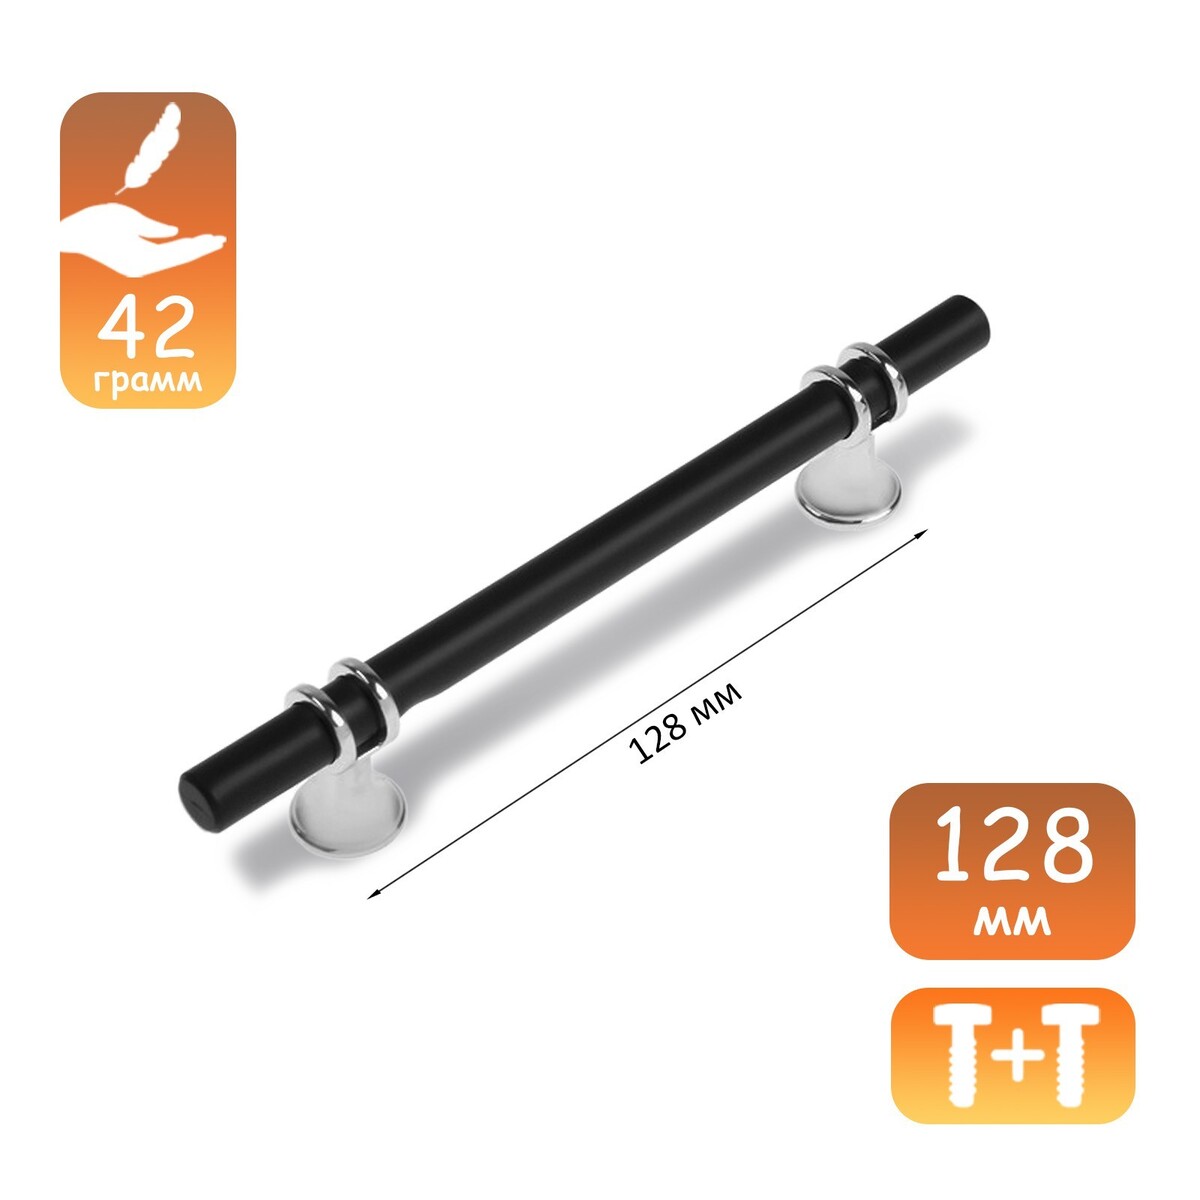 Ручка скоба cappio, м/о 128 мм, d=12 mm, пластик, цвет хром/черный ручка скоба cappio м о 128 мм d 12 mm пластик хром